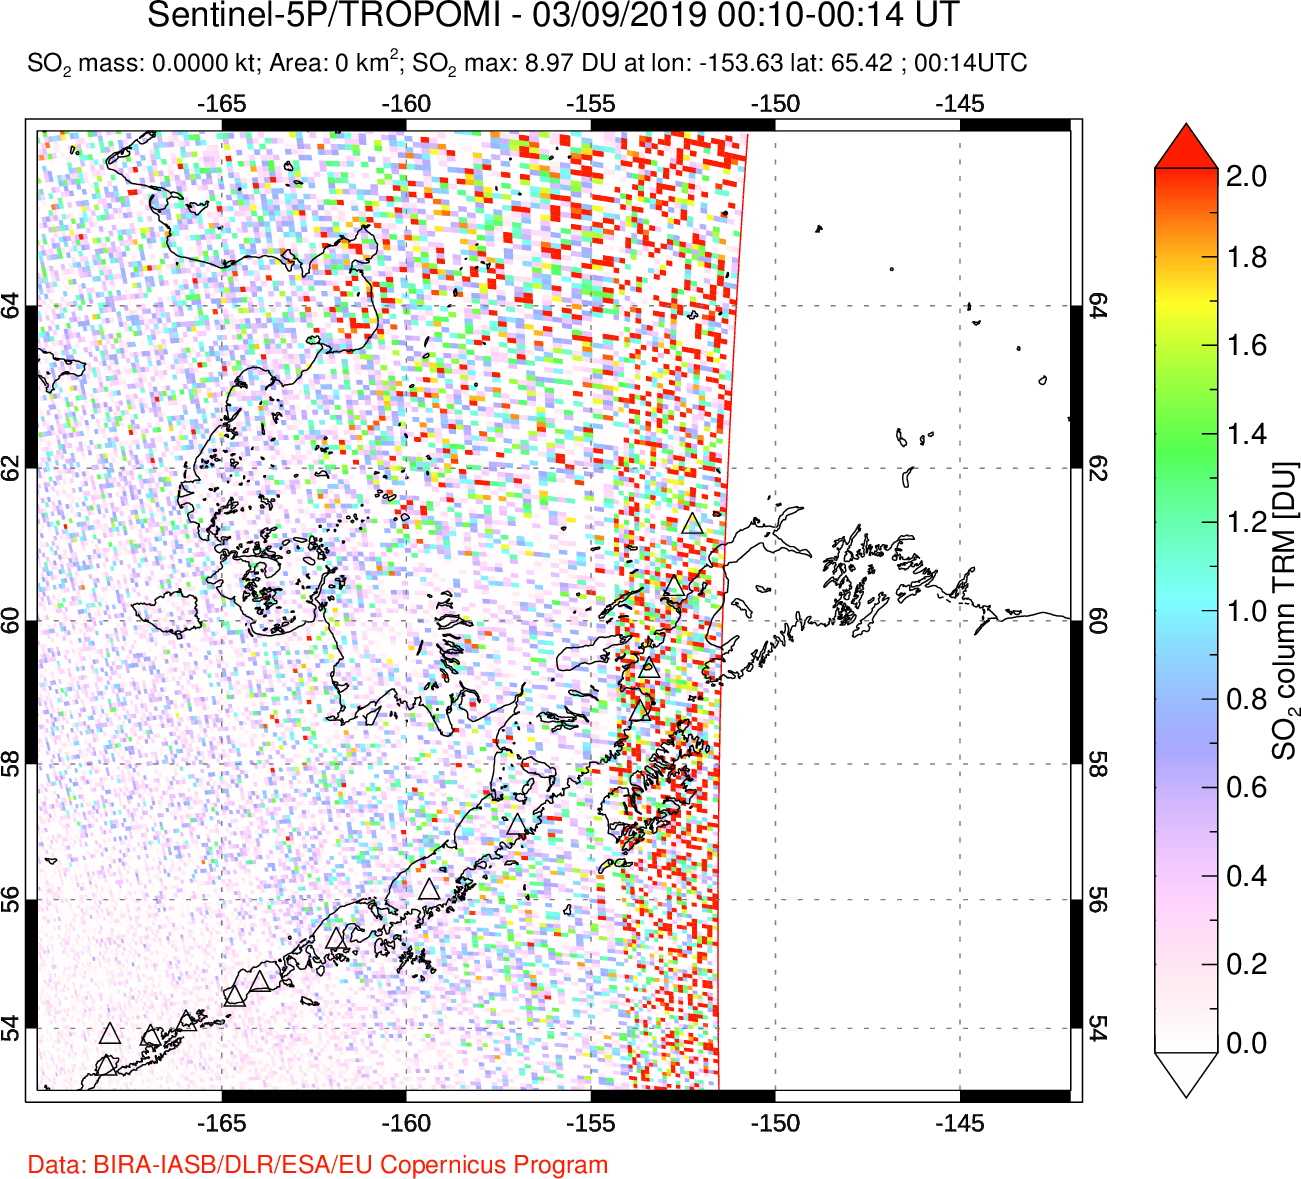 A sulfur dioxide image over Alaska, USA on Mar 09, 2019.